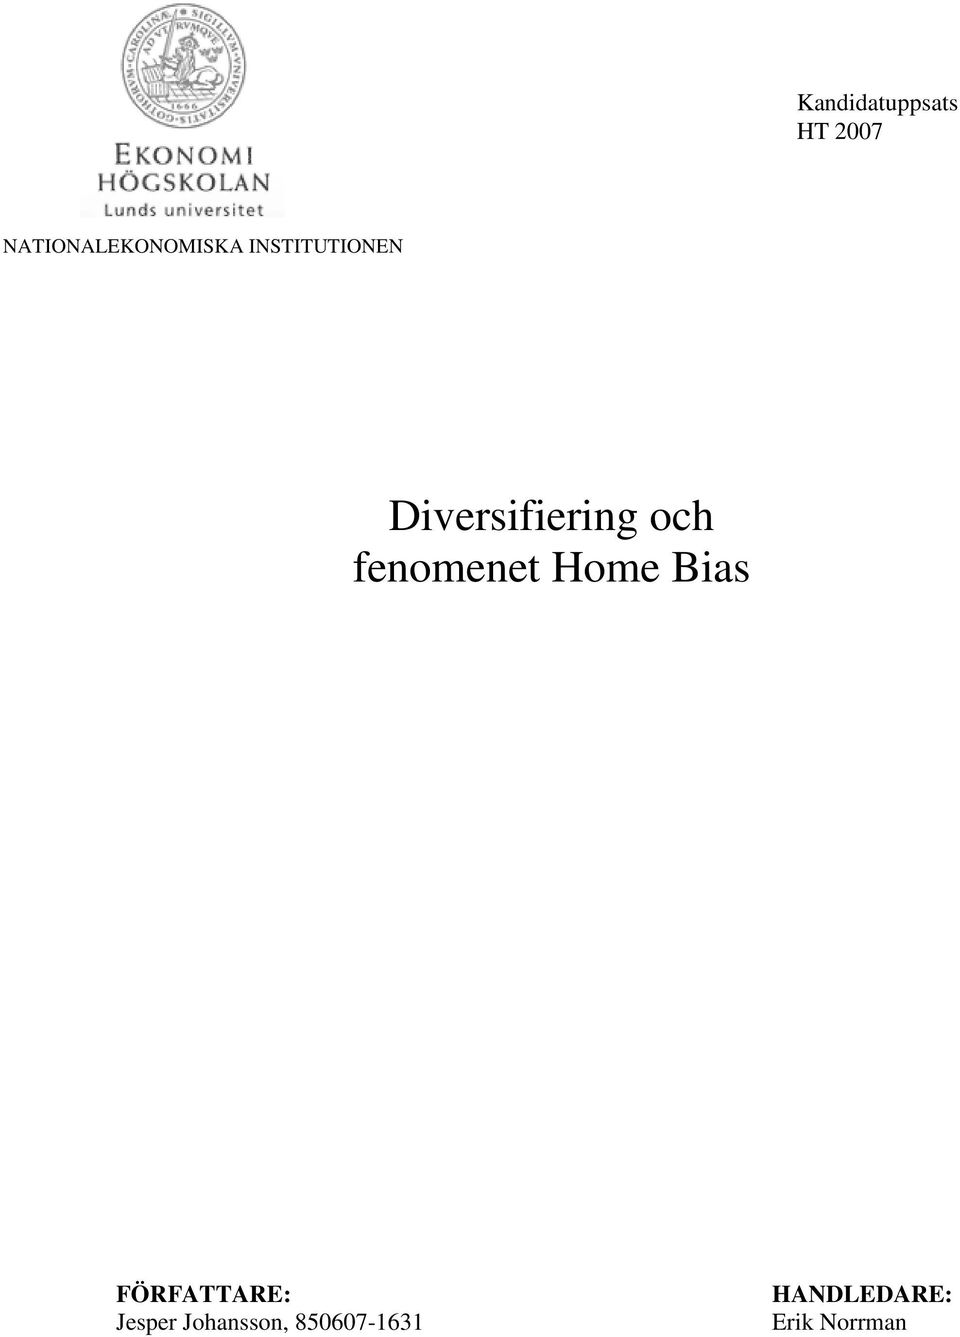 Diversifiering och fenomenet Home Bias - PDF